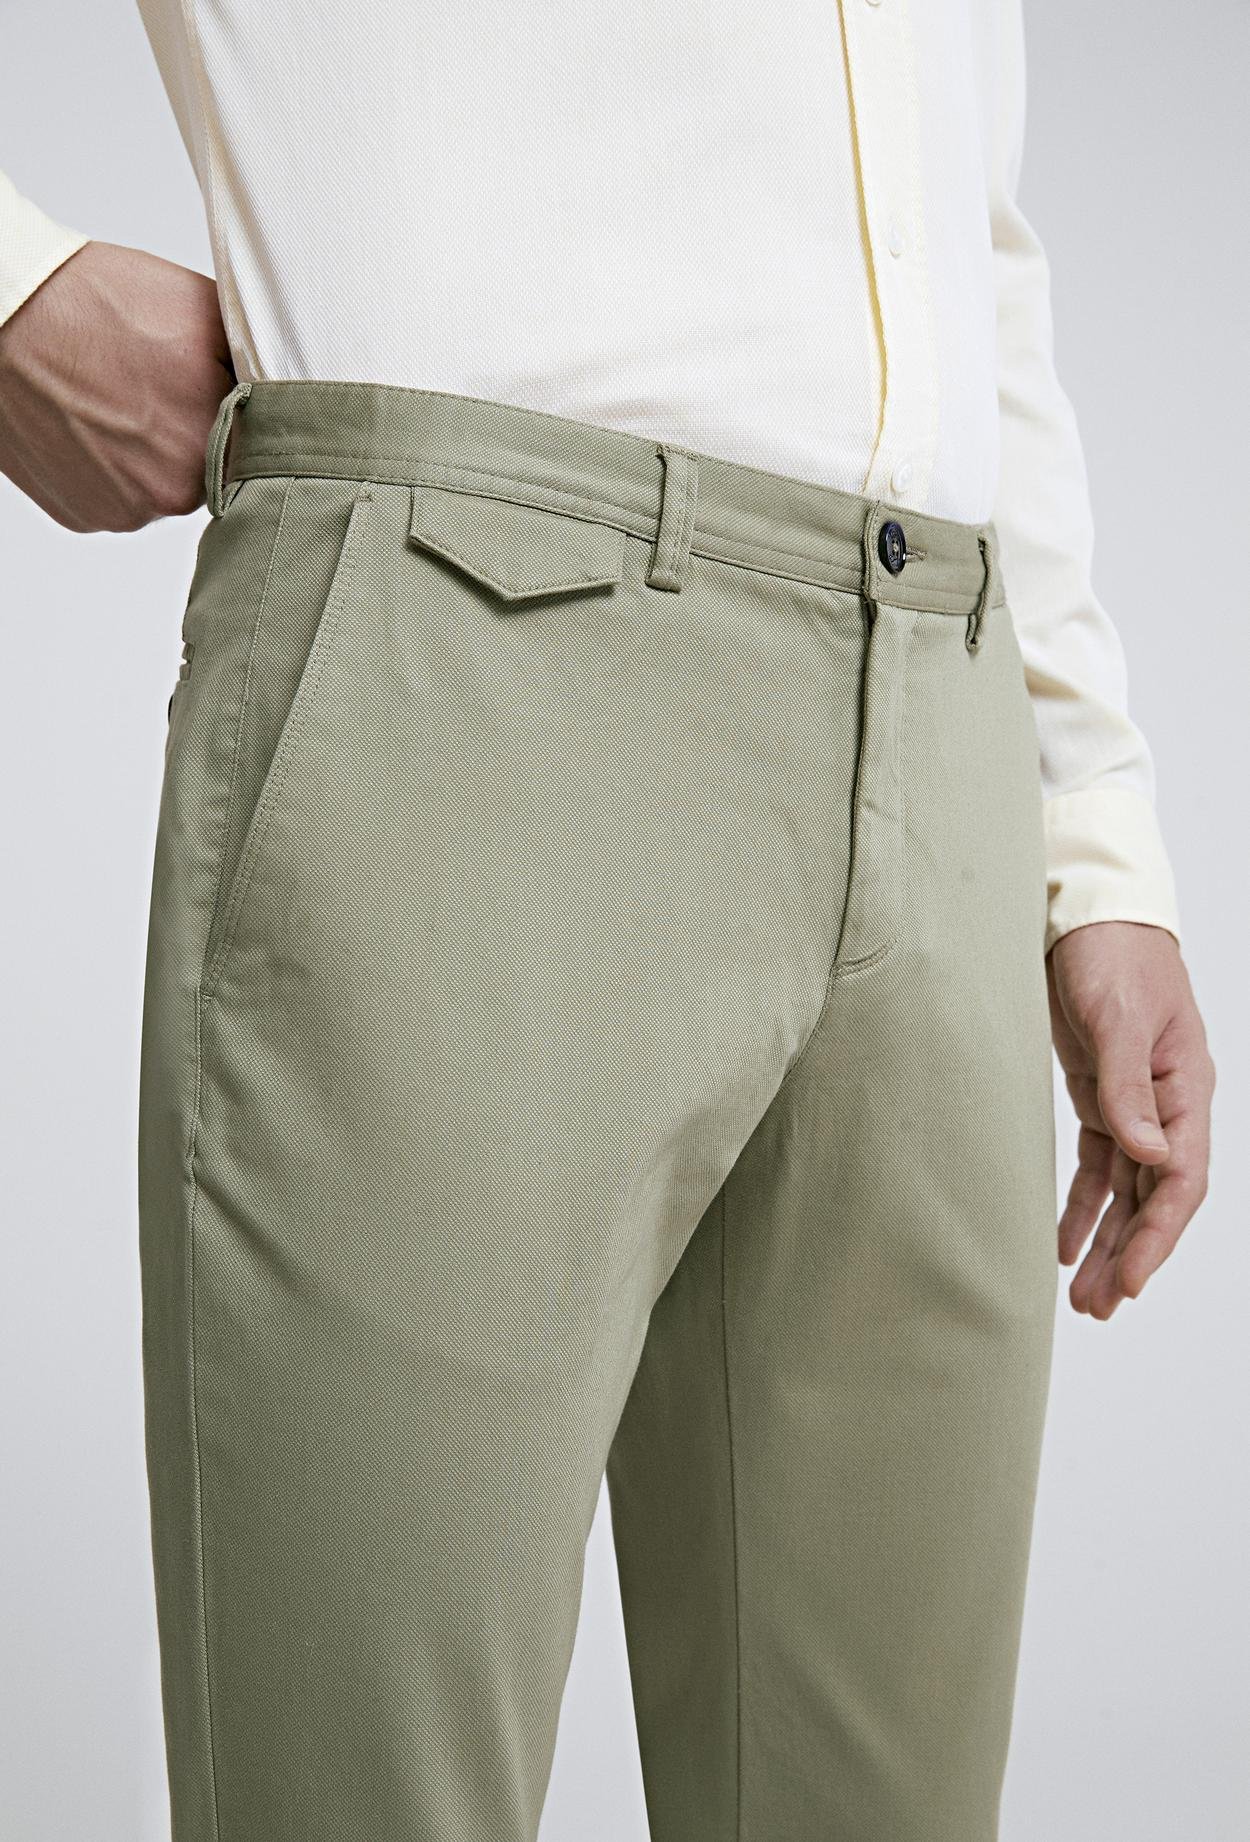 Twn Slim Fit Yeşil Chino Pantolon